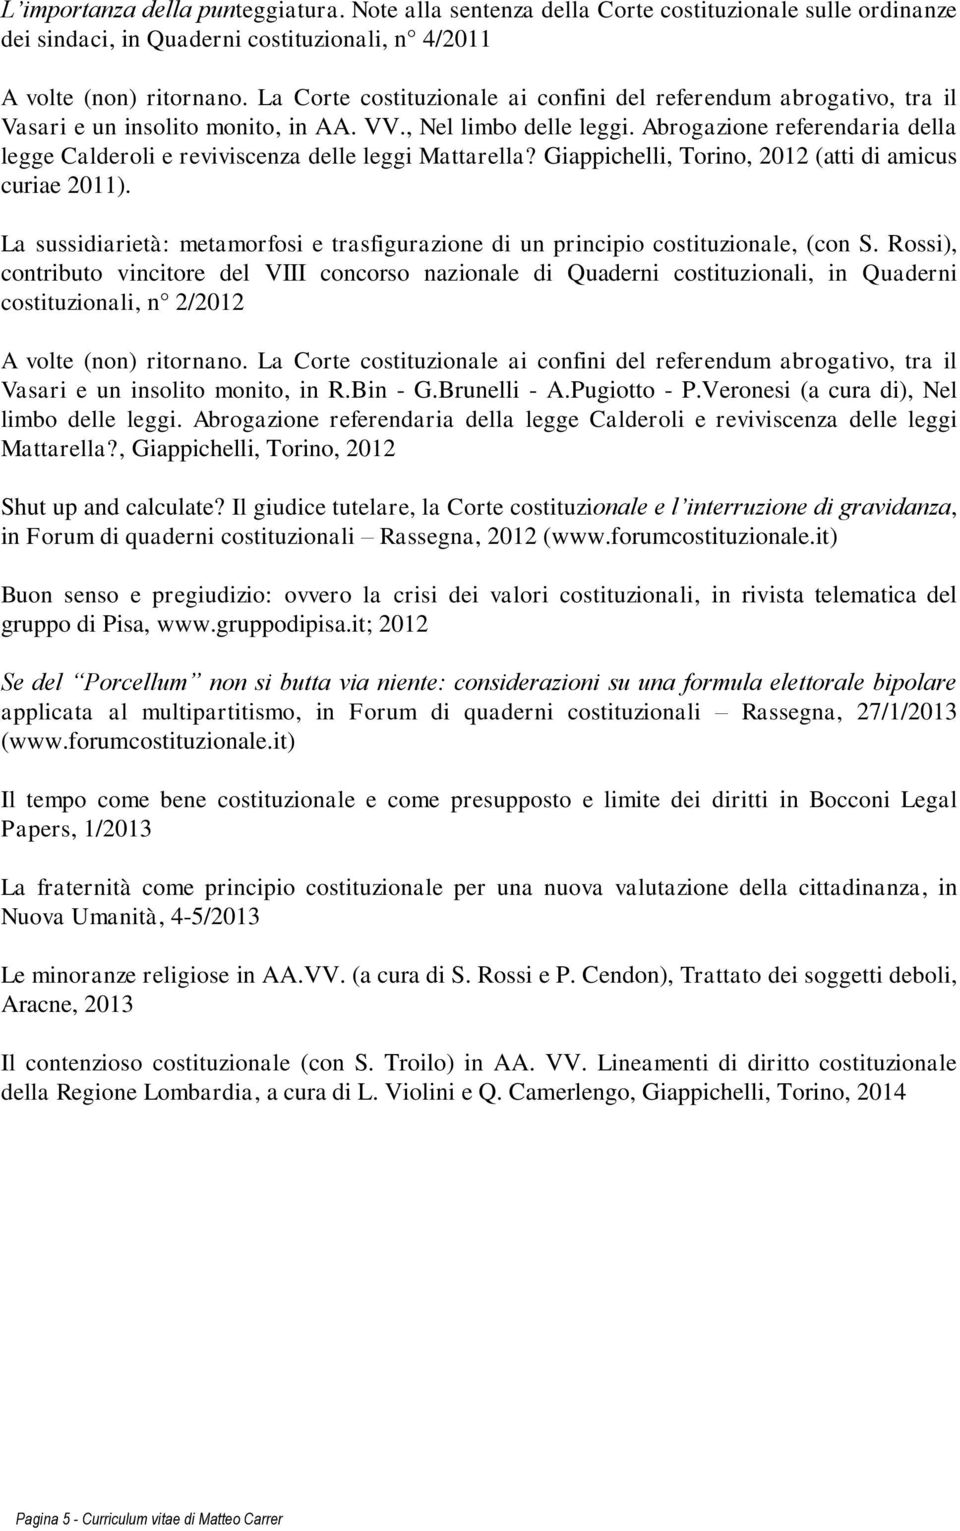 Abrogazione referendaria della legge Calderoli e reviviscenza delle leggi Mattarella? Giappichelli, Torino, 2012 (atti di amicus curiae 2011).